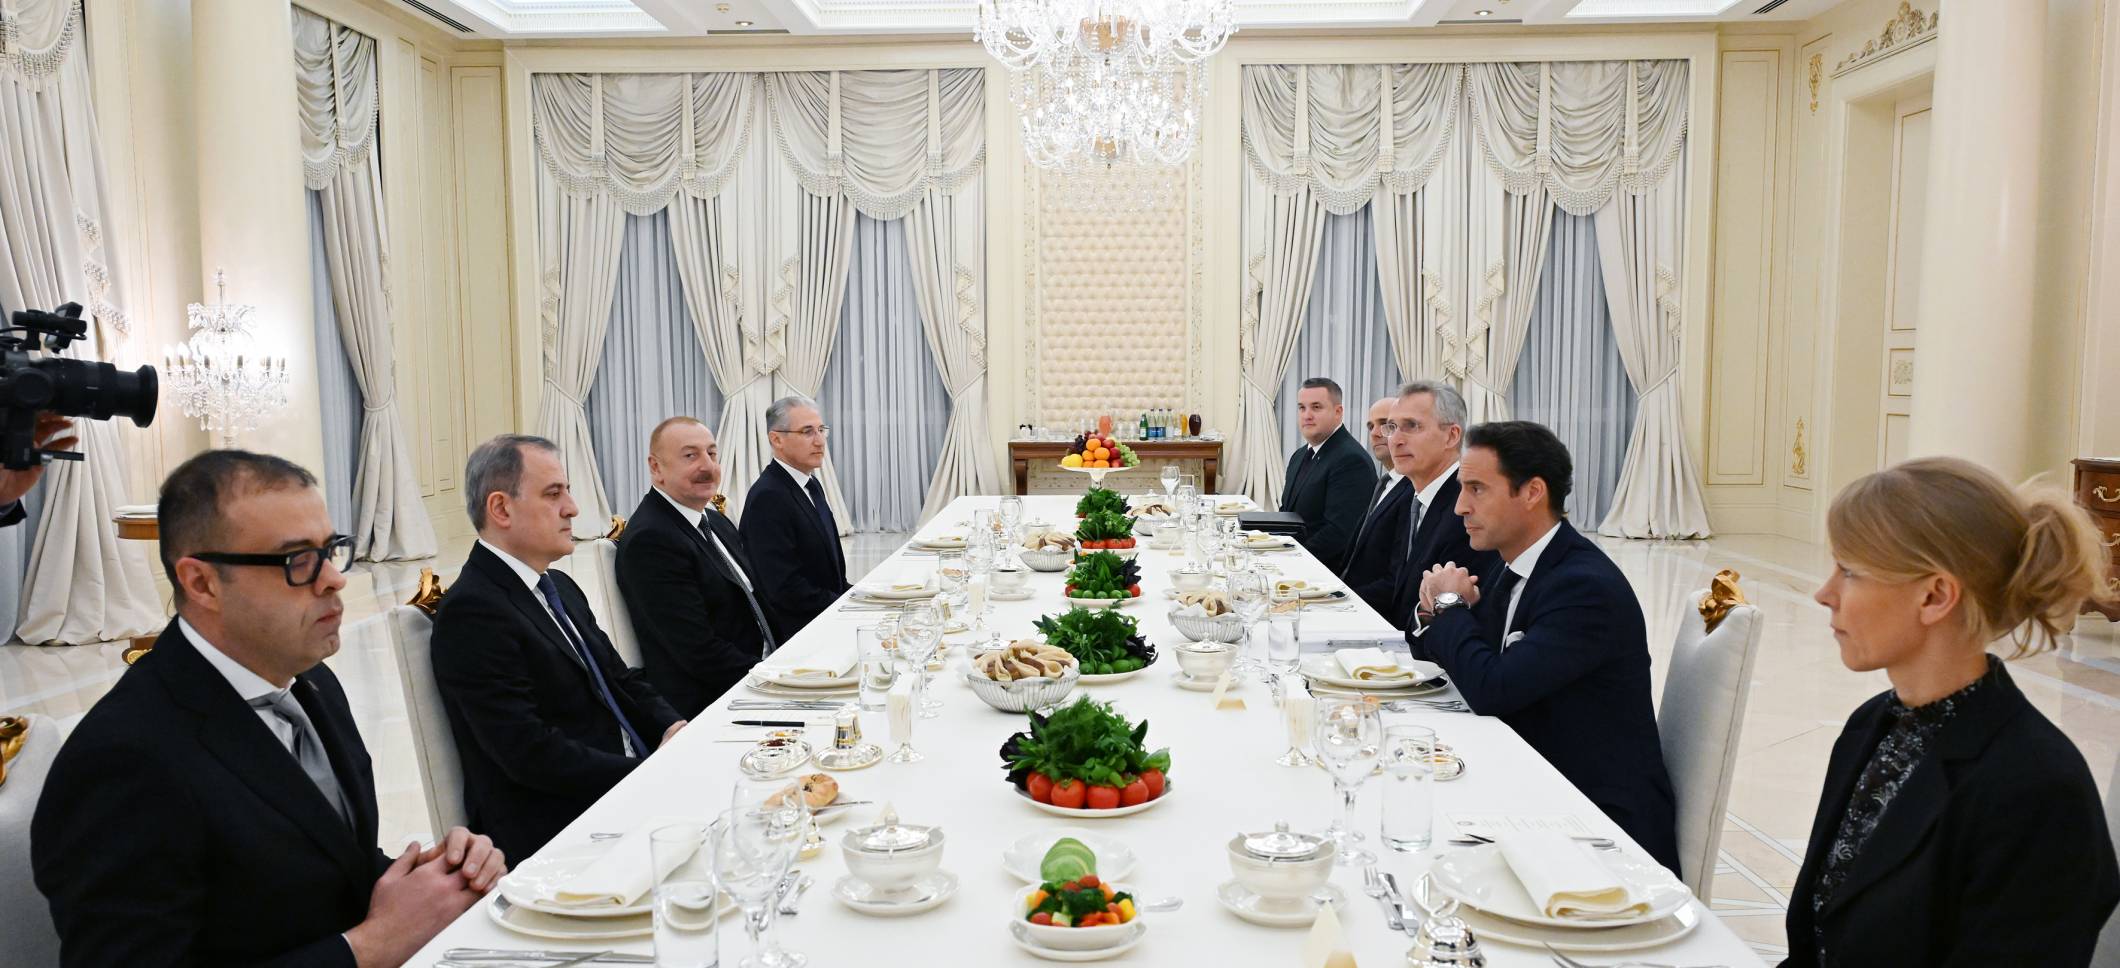 Состоялась встреча Президента Ильхама Алиева с генеральным секретарем НАТО в расширенном составе в ходе ужина